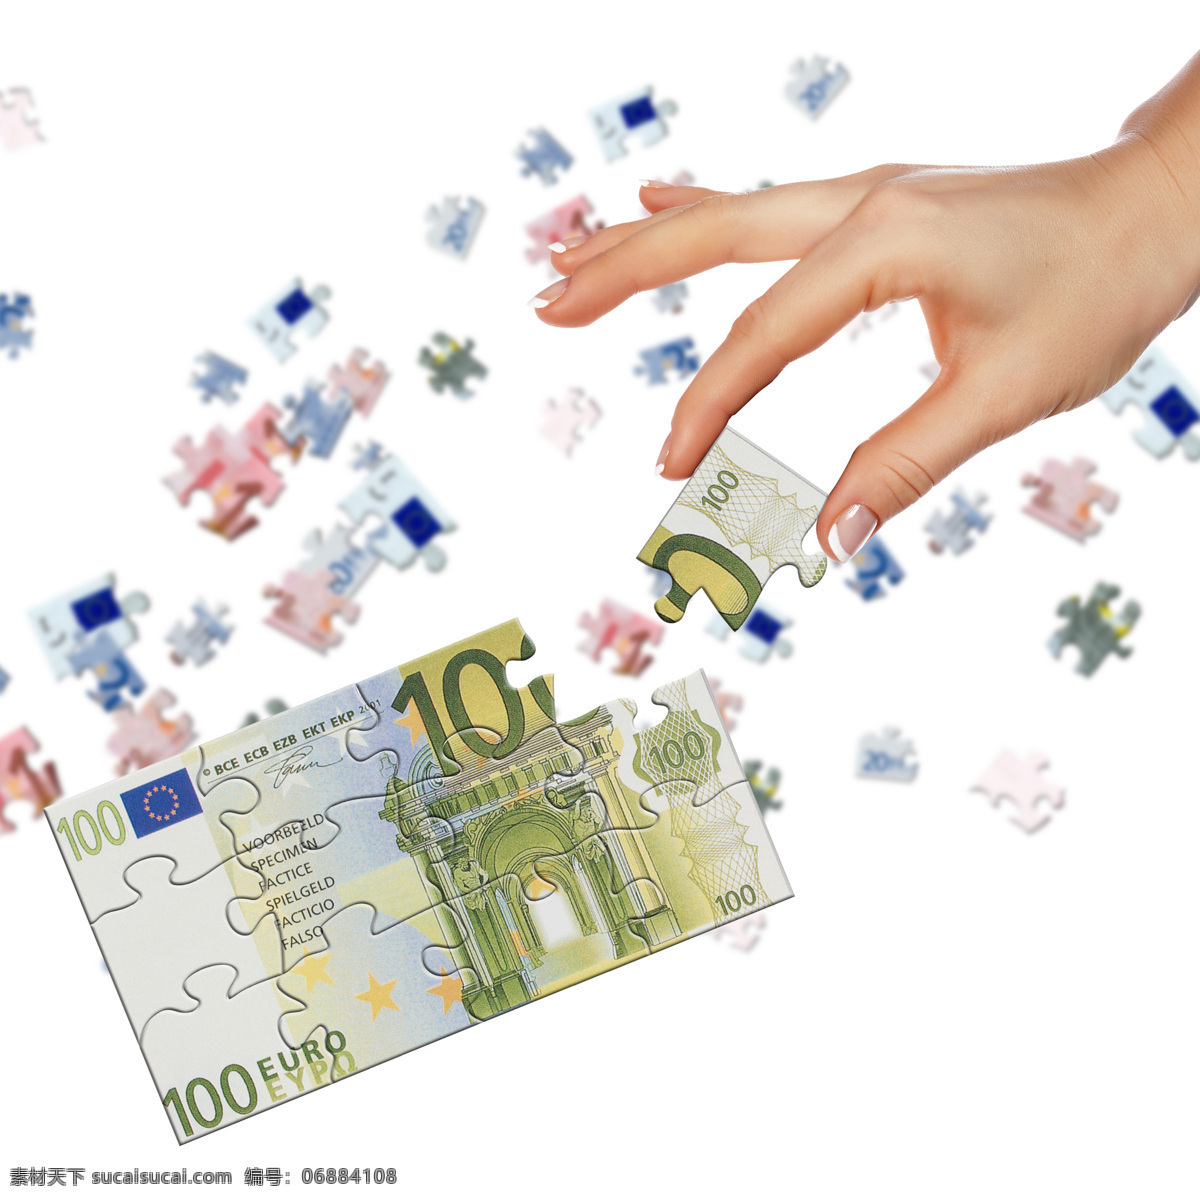 欧元 拼图 手部 特写 欧元拼图 手势 拿着 玩具 金融 商业 智力拼图 高清图片 金融货币 商务金融